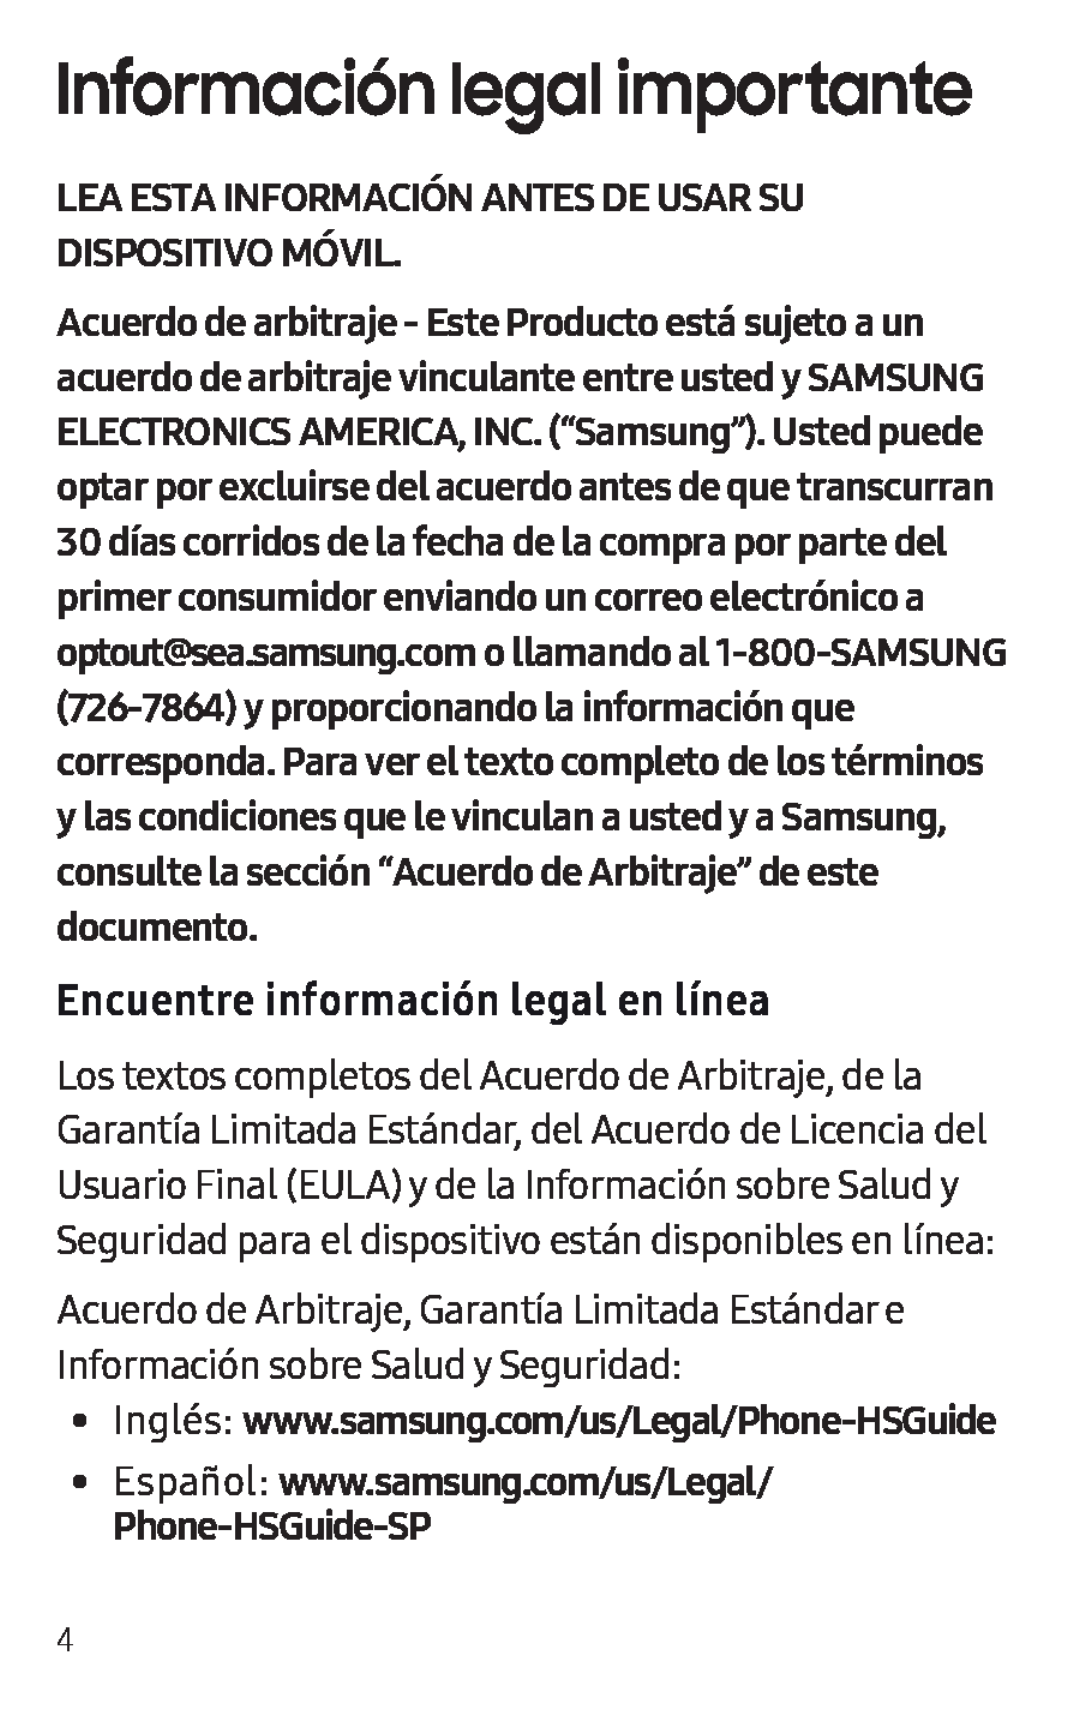 Encuentre información legal en línea Galaxy S8 Active T-Mobile